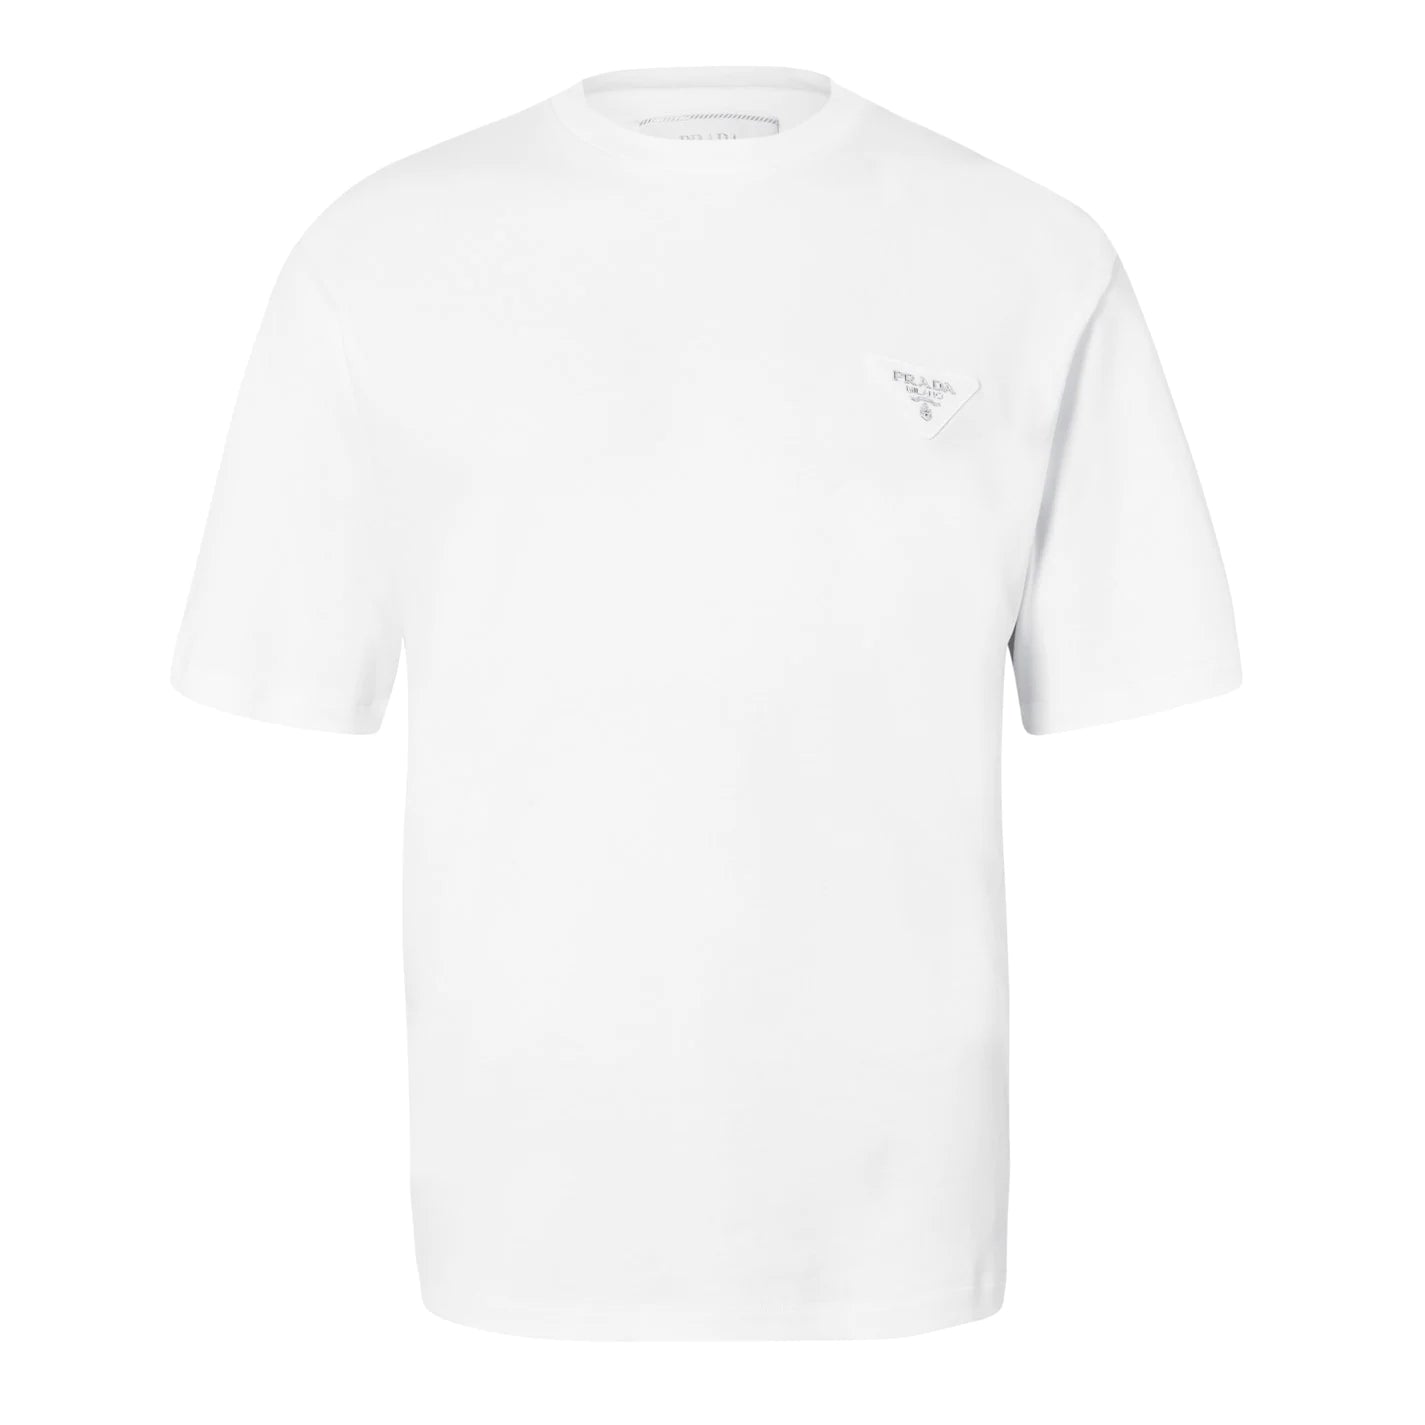 Prada Interlock T shirt White